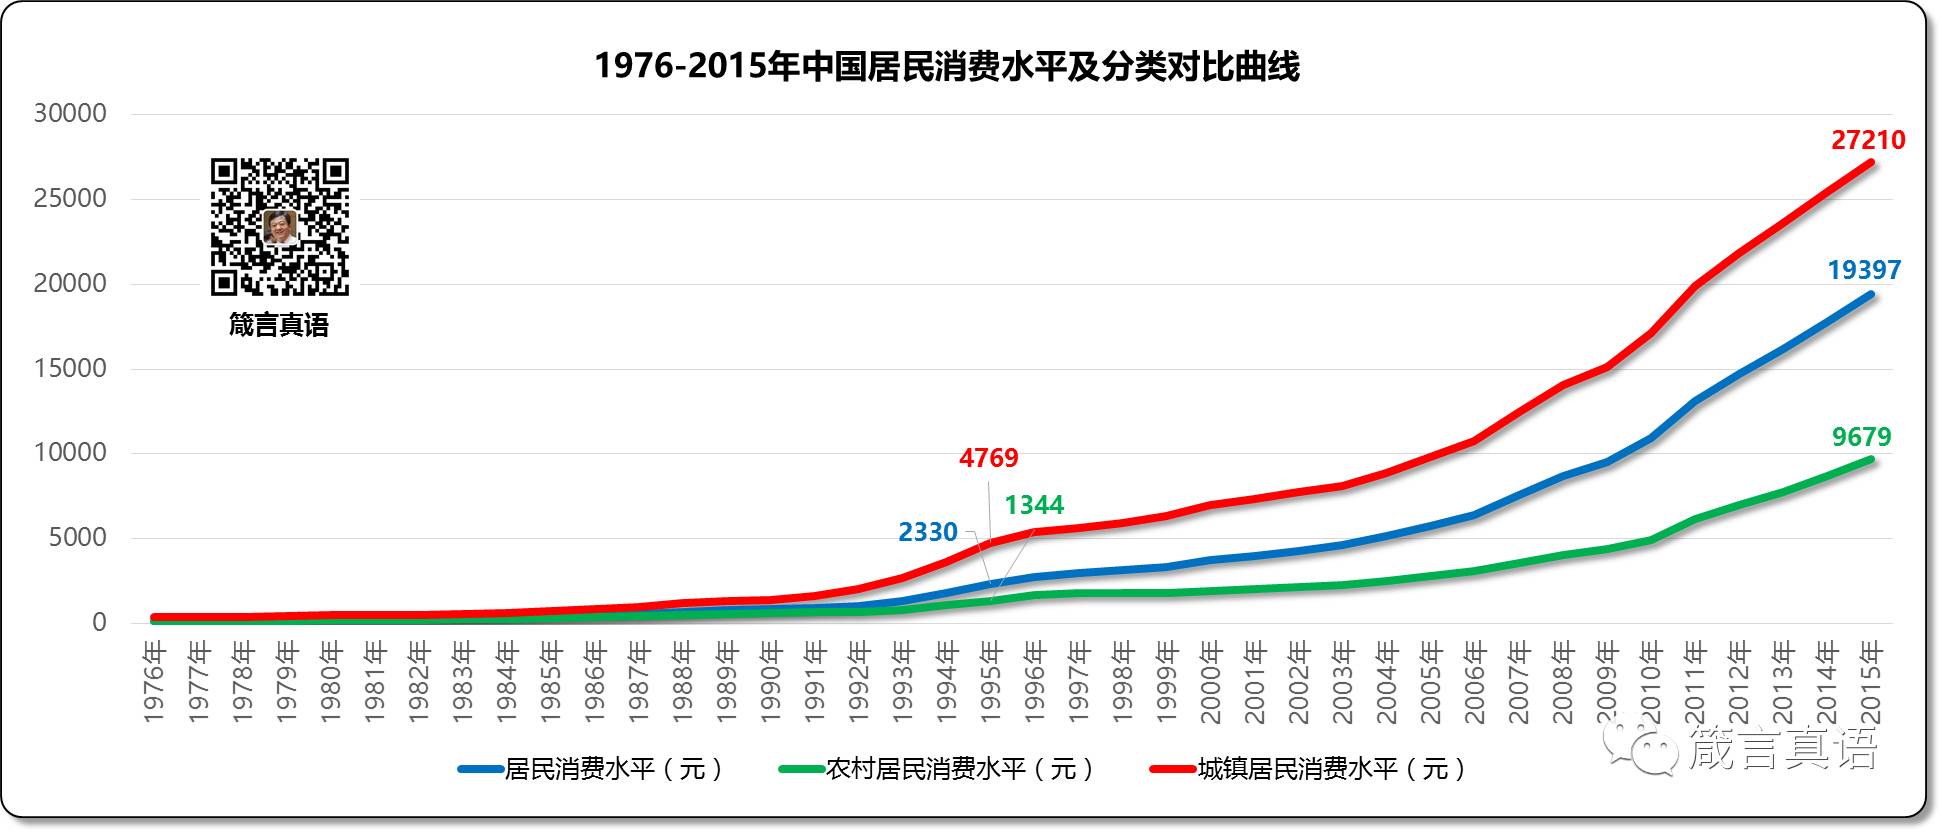 1976-2015年中国居民消费水平及分类对比曲线